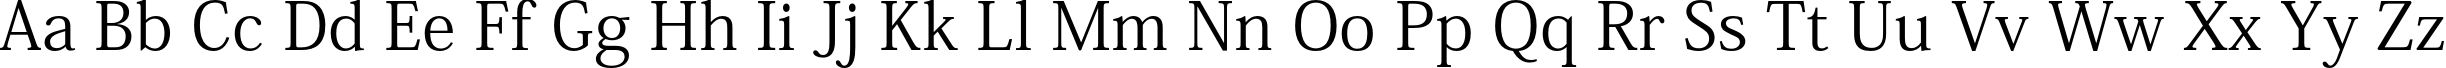 Пример написания английского алфавита шрифтом Adobe Kaiti Std R